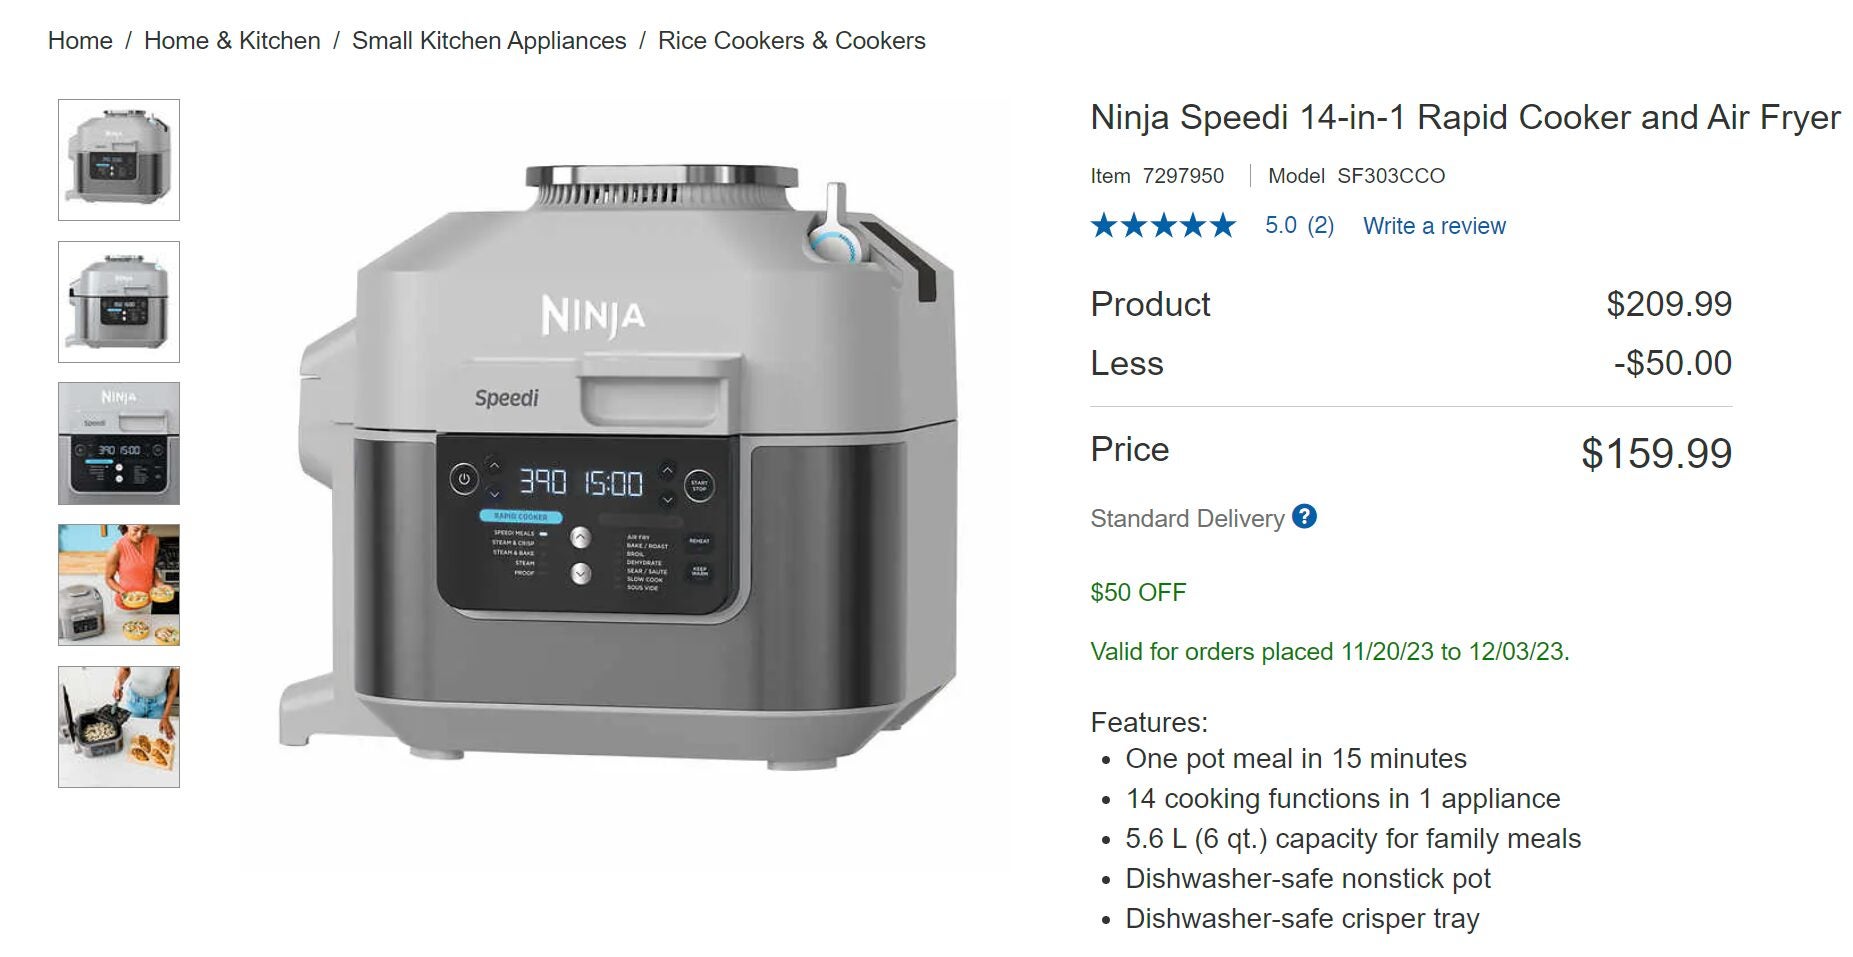 Costco] [Black Friday] Ninja Foodi XL pressure cooker 159.99$ -  RedFlagDeals.com Forums